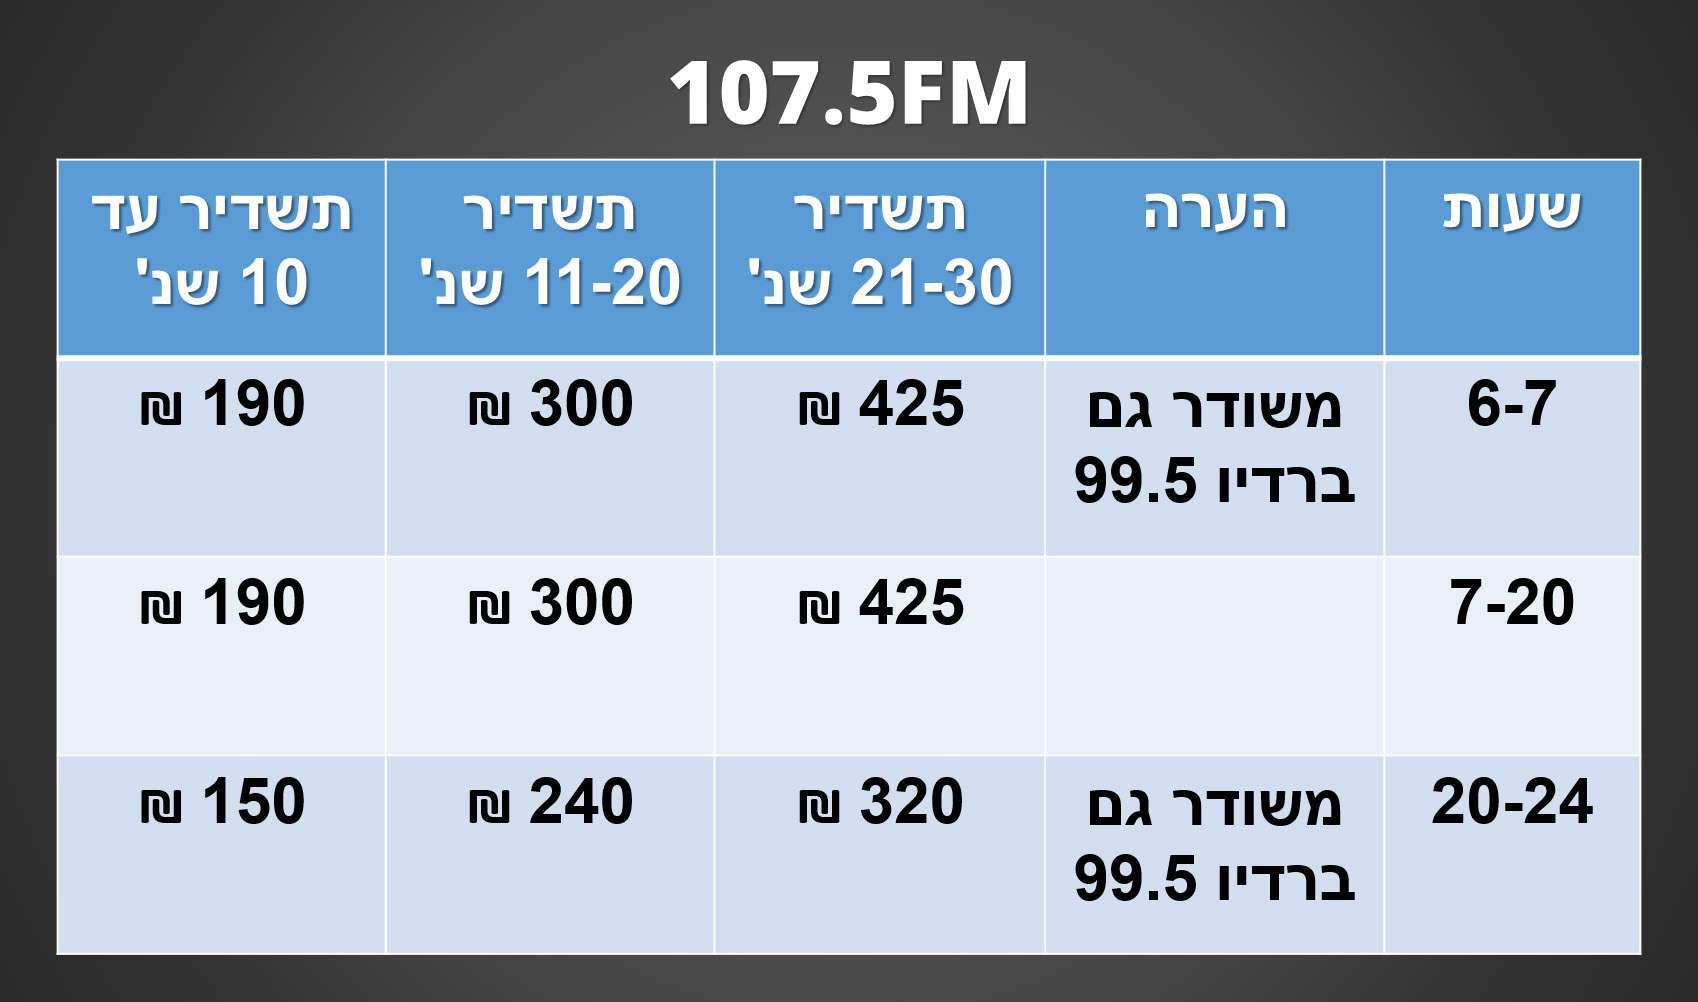 לוח תעריפים לשידור תעמולת הבחירות לרשויות המקומיות - רדיו חיפה 107.5FM